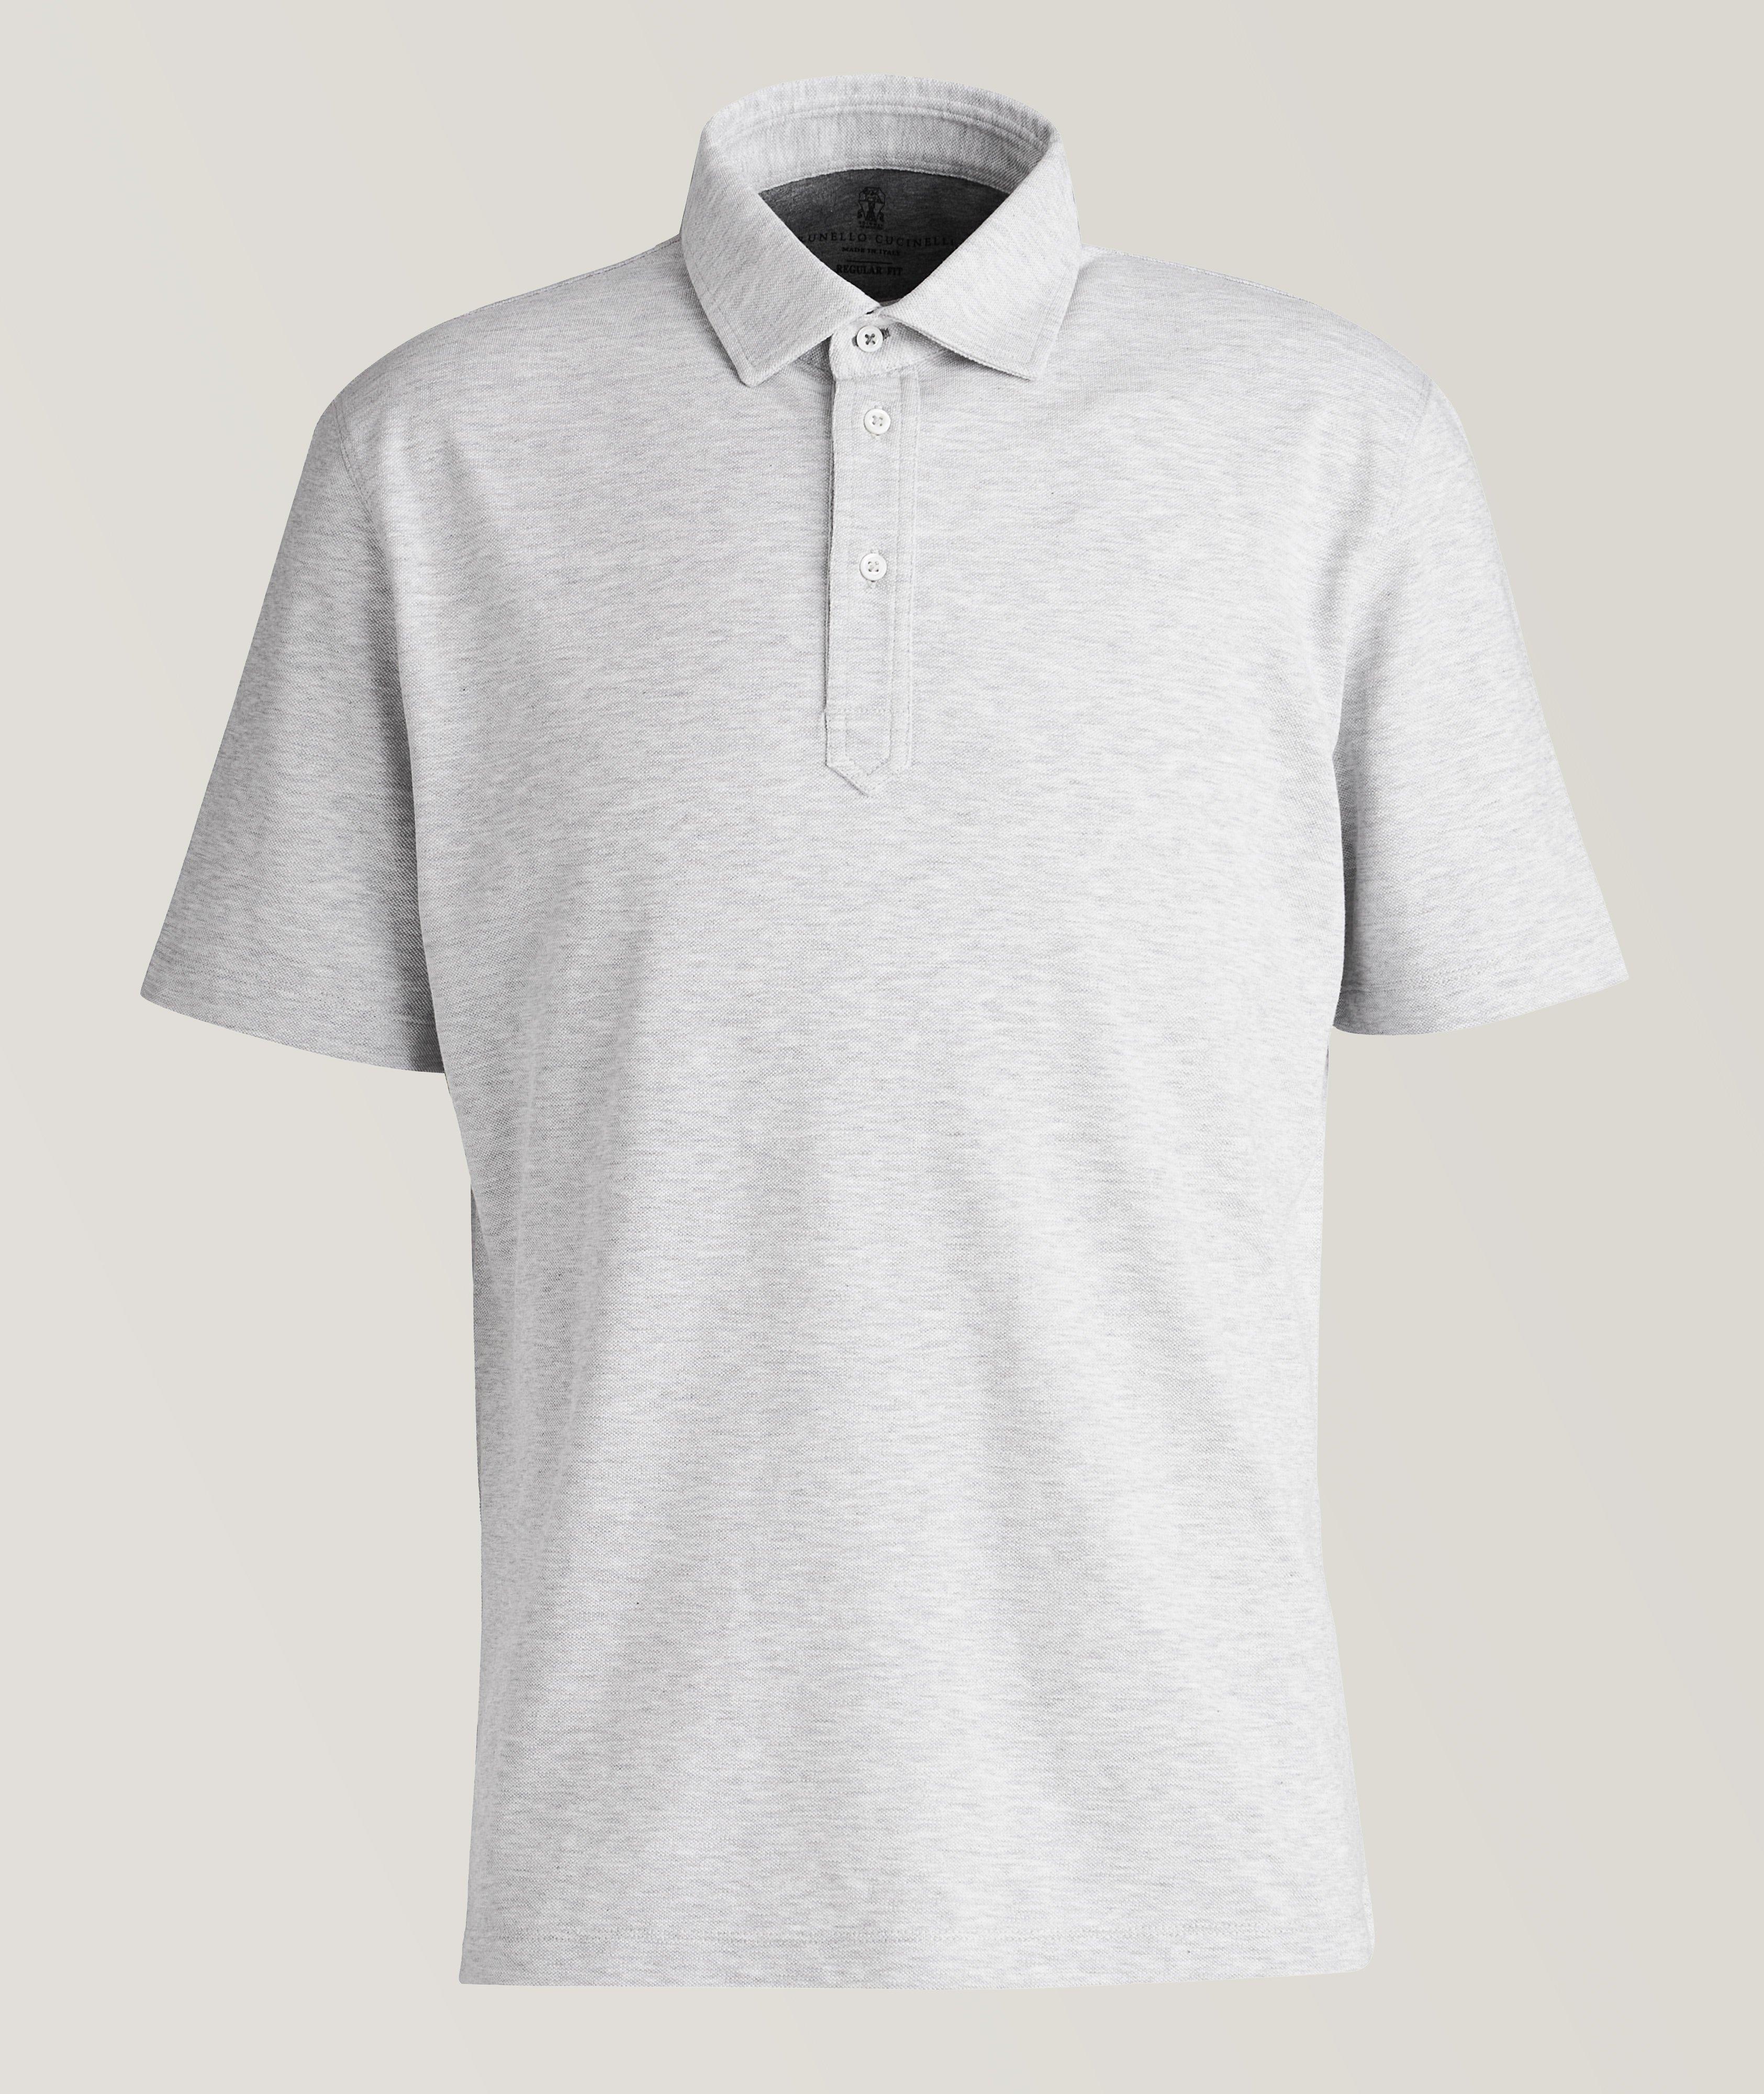 Short-Sleeve Jersey Cotton Piqué  Polo image 0